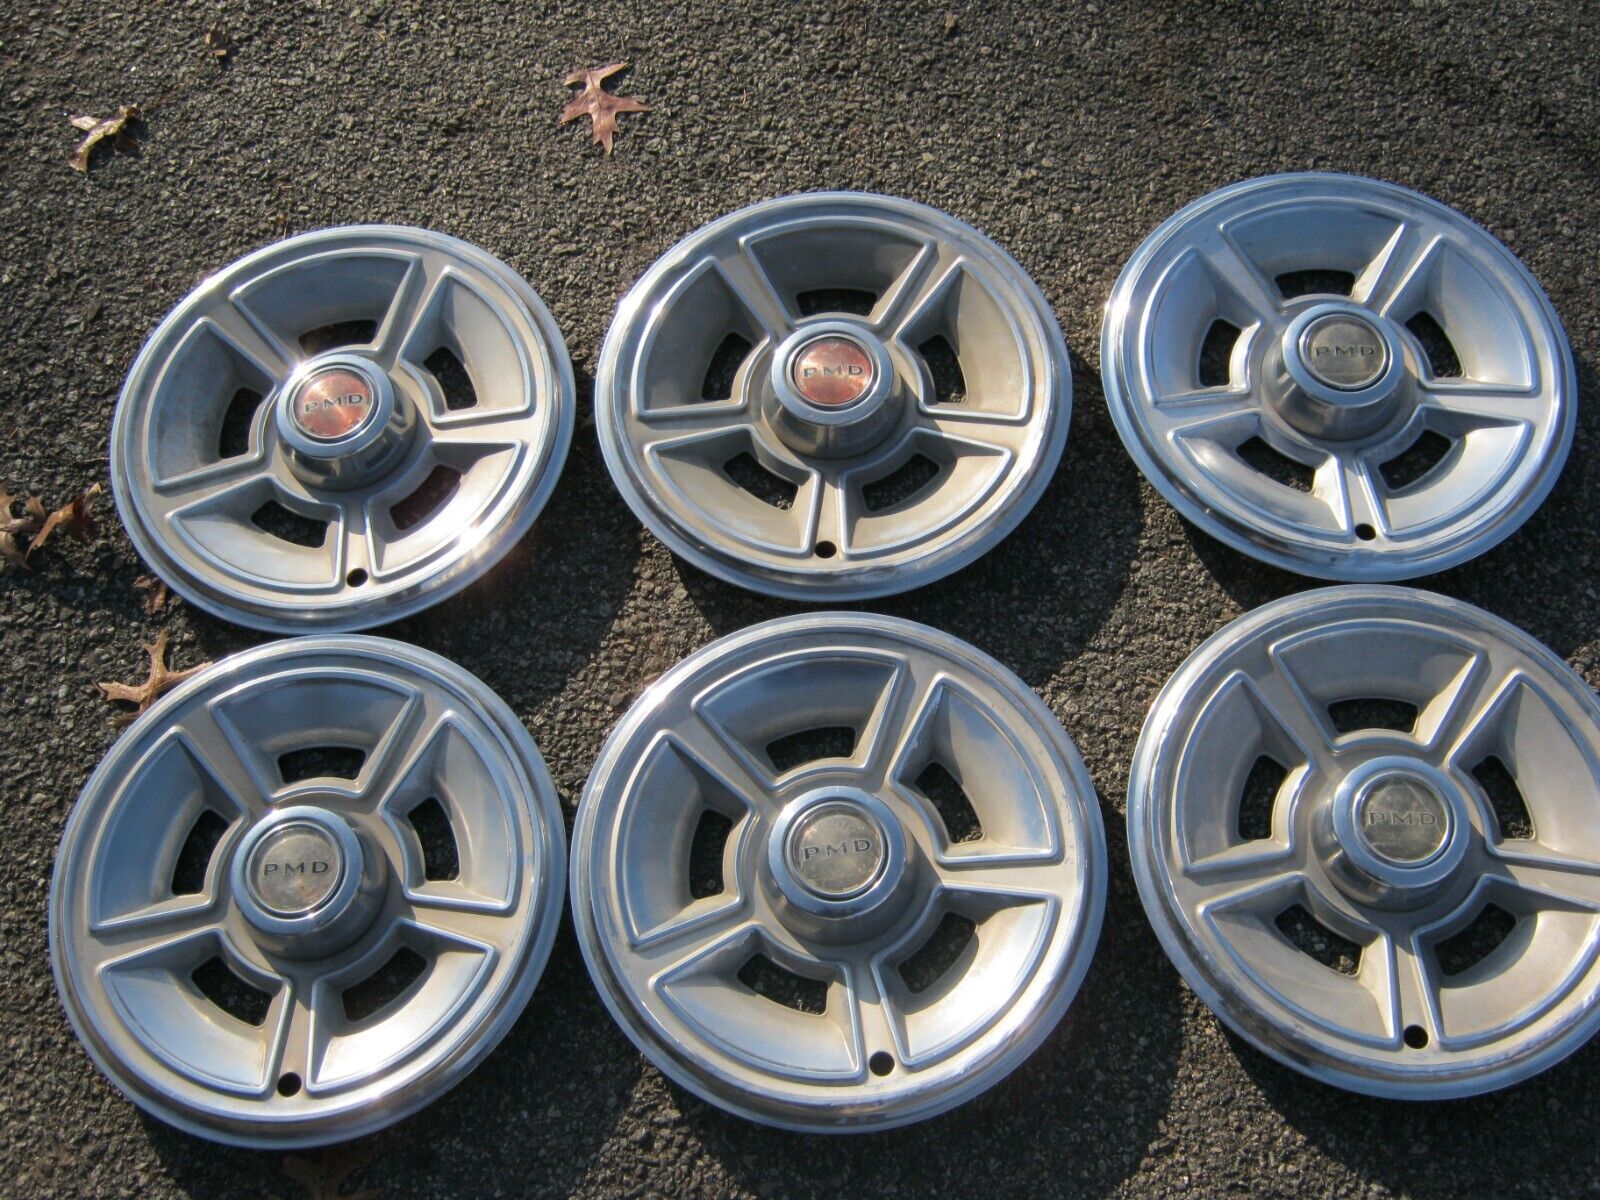 Factory original 1969 Pontiac Firebird Tempest 14 inch hubcaps wheel covers